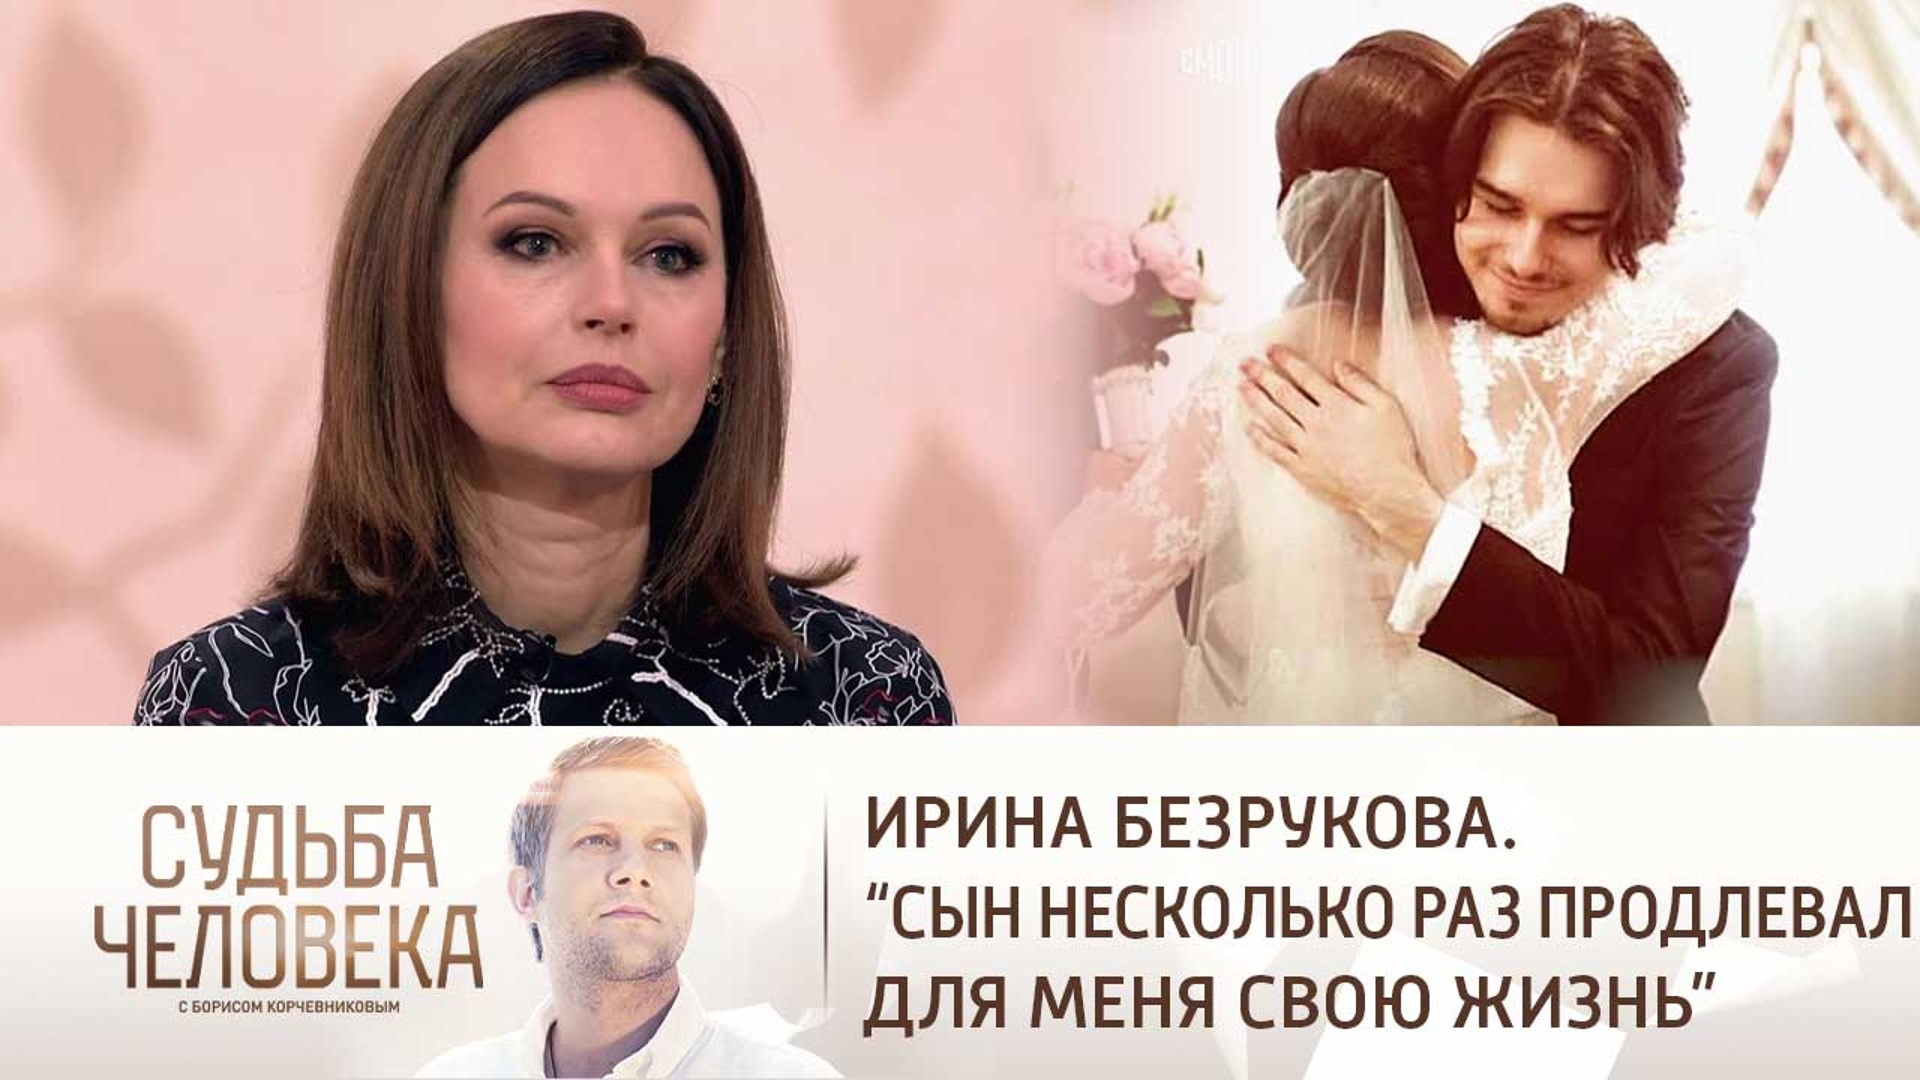 Ирина Безрукова судьба человека с Борисом